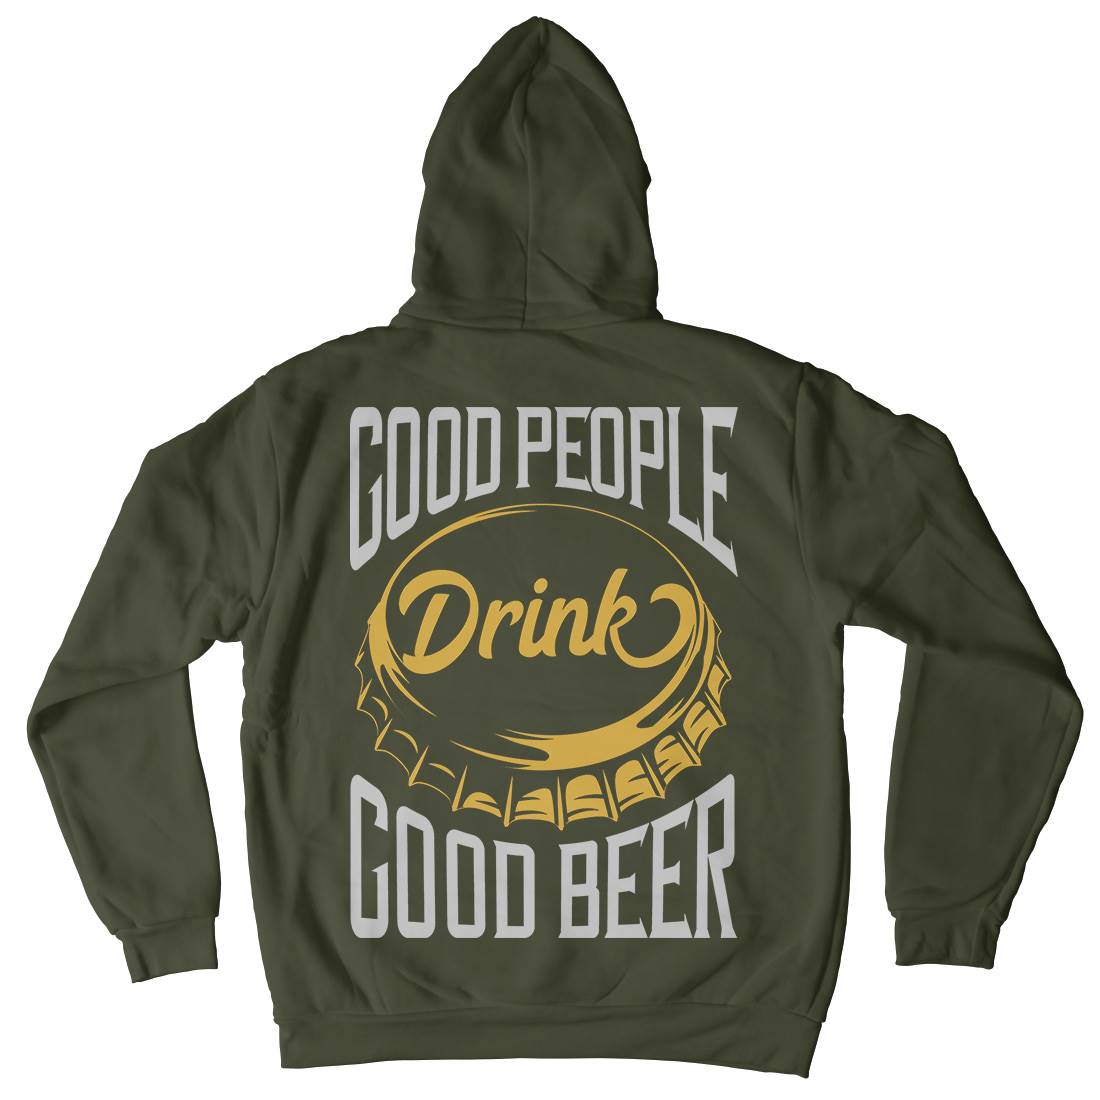 Good People Drink Beer Kids Crew Neck Hoodie Drinks B287